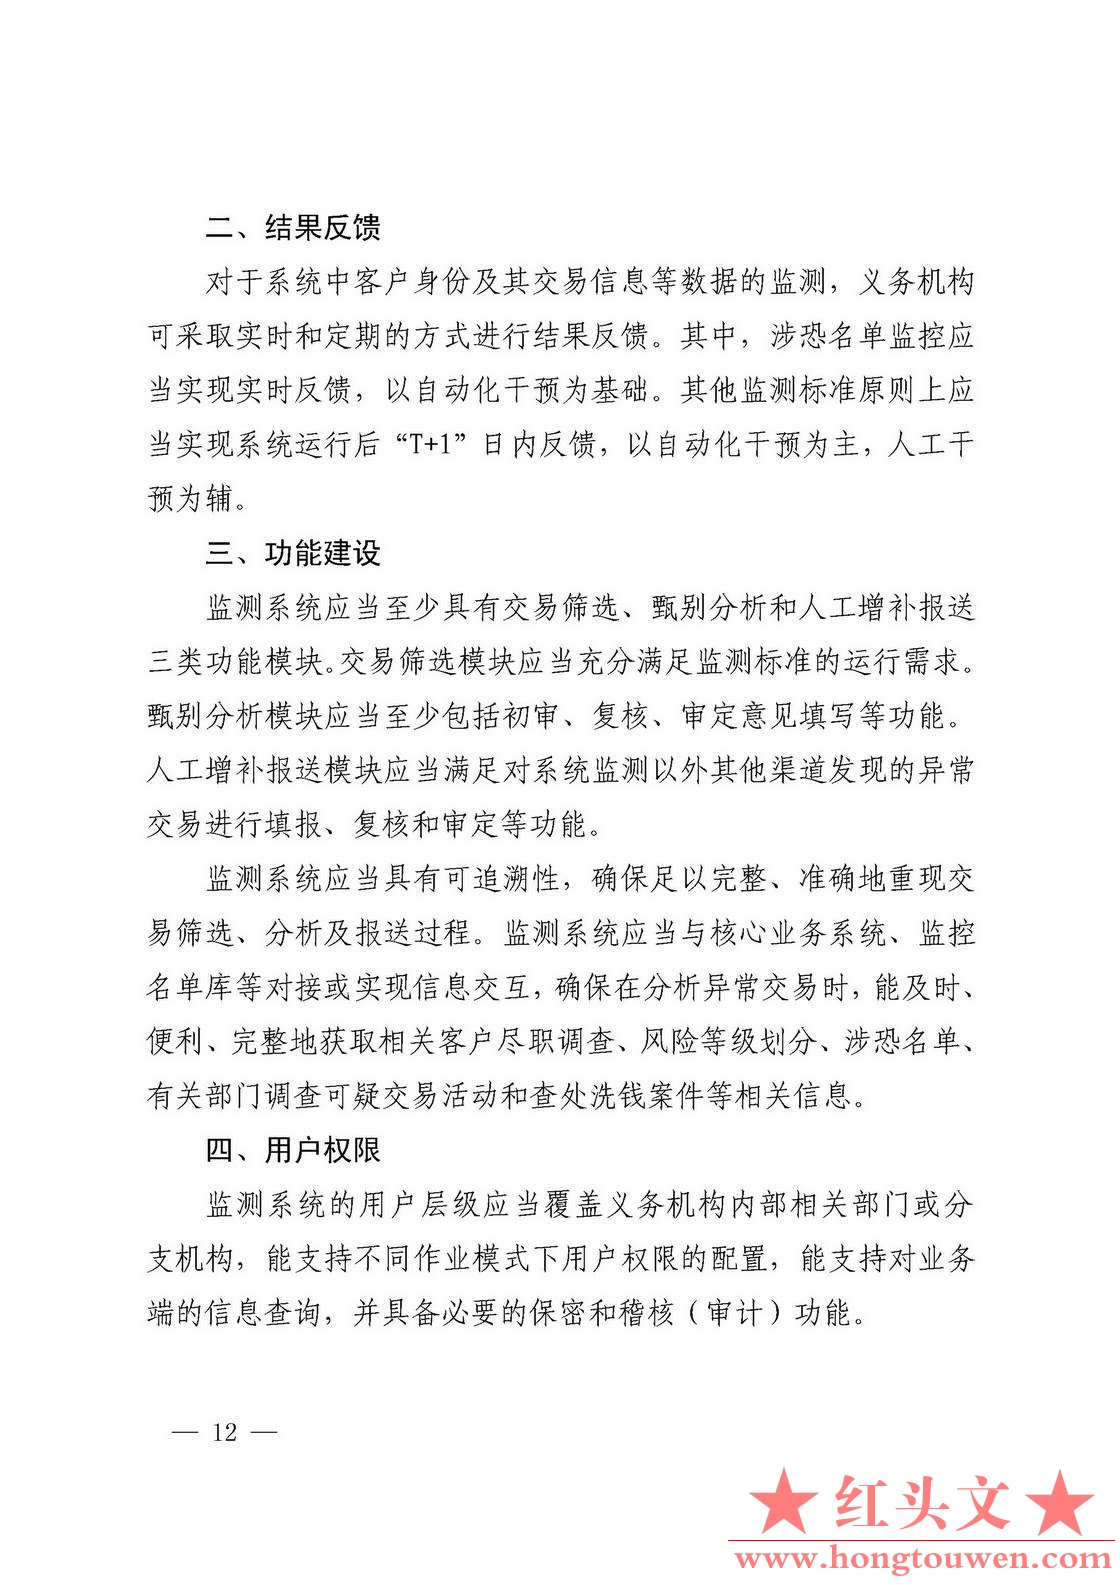 银发[2017]108号-中国人民银行关于印发《义务机构反洗钱交易监测标准建设工作指引》的.jpg